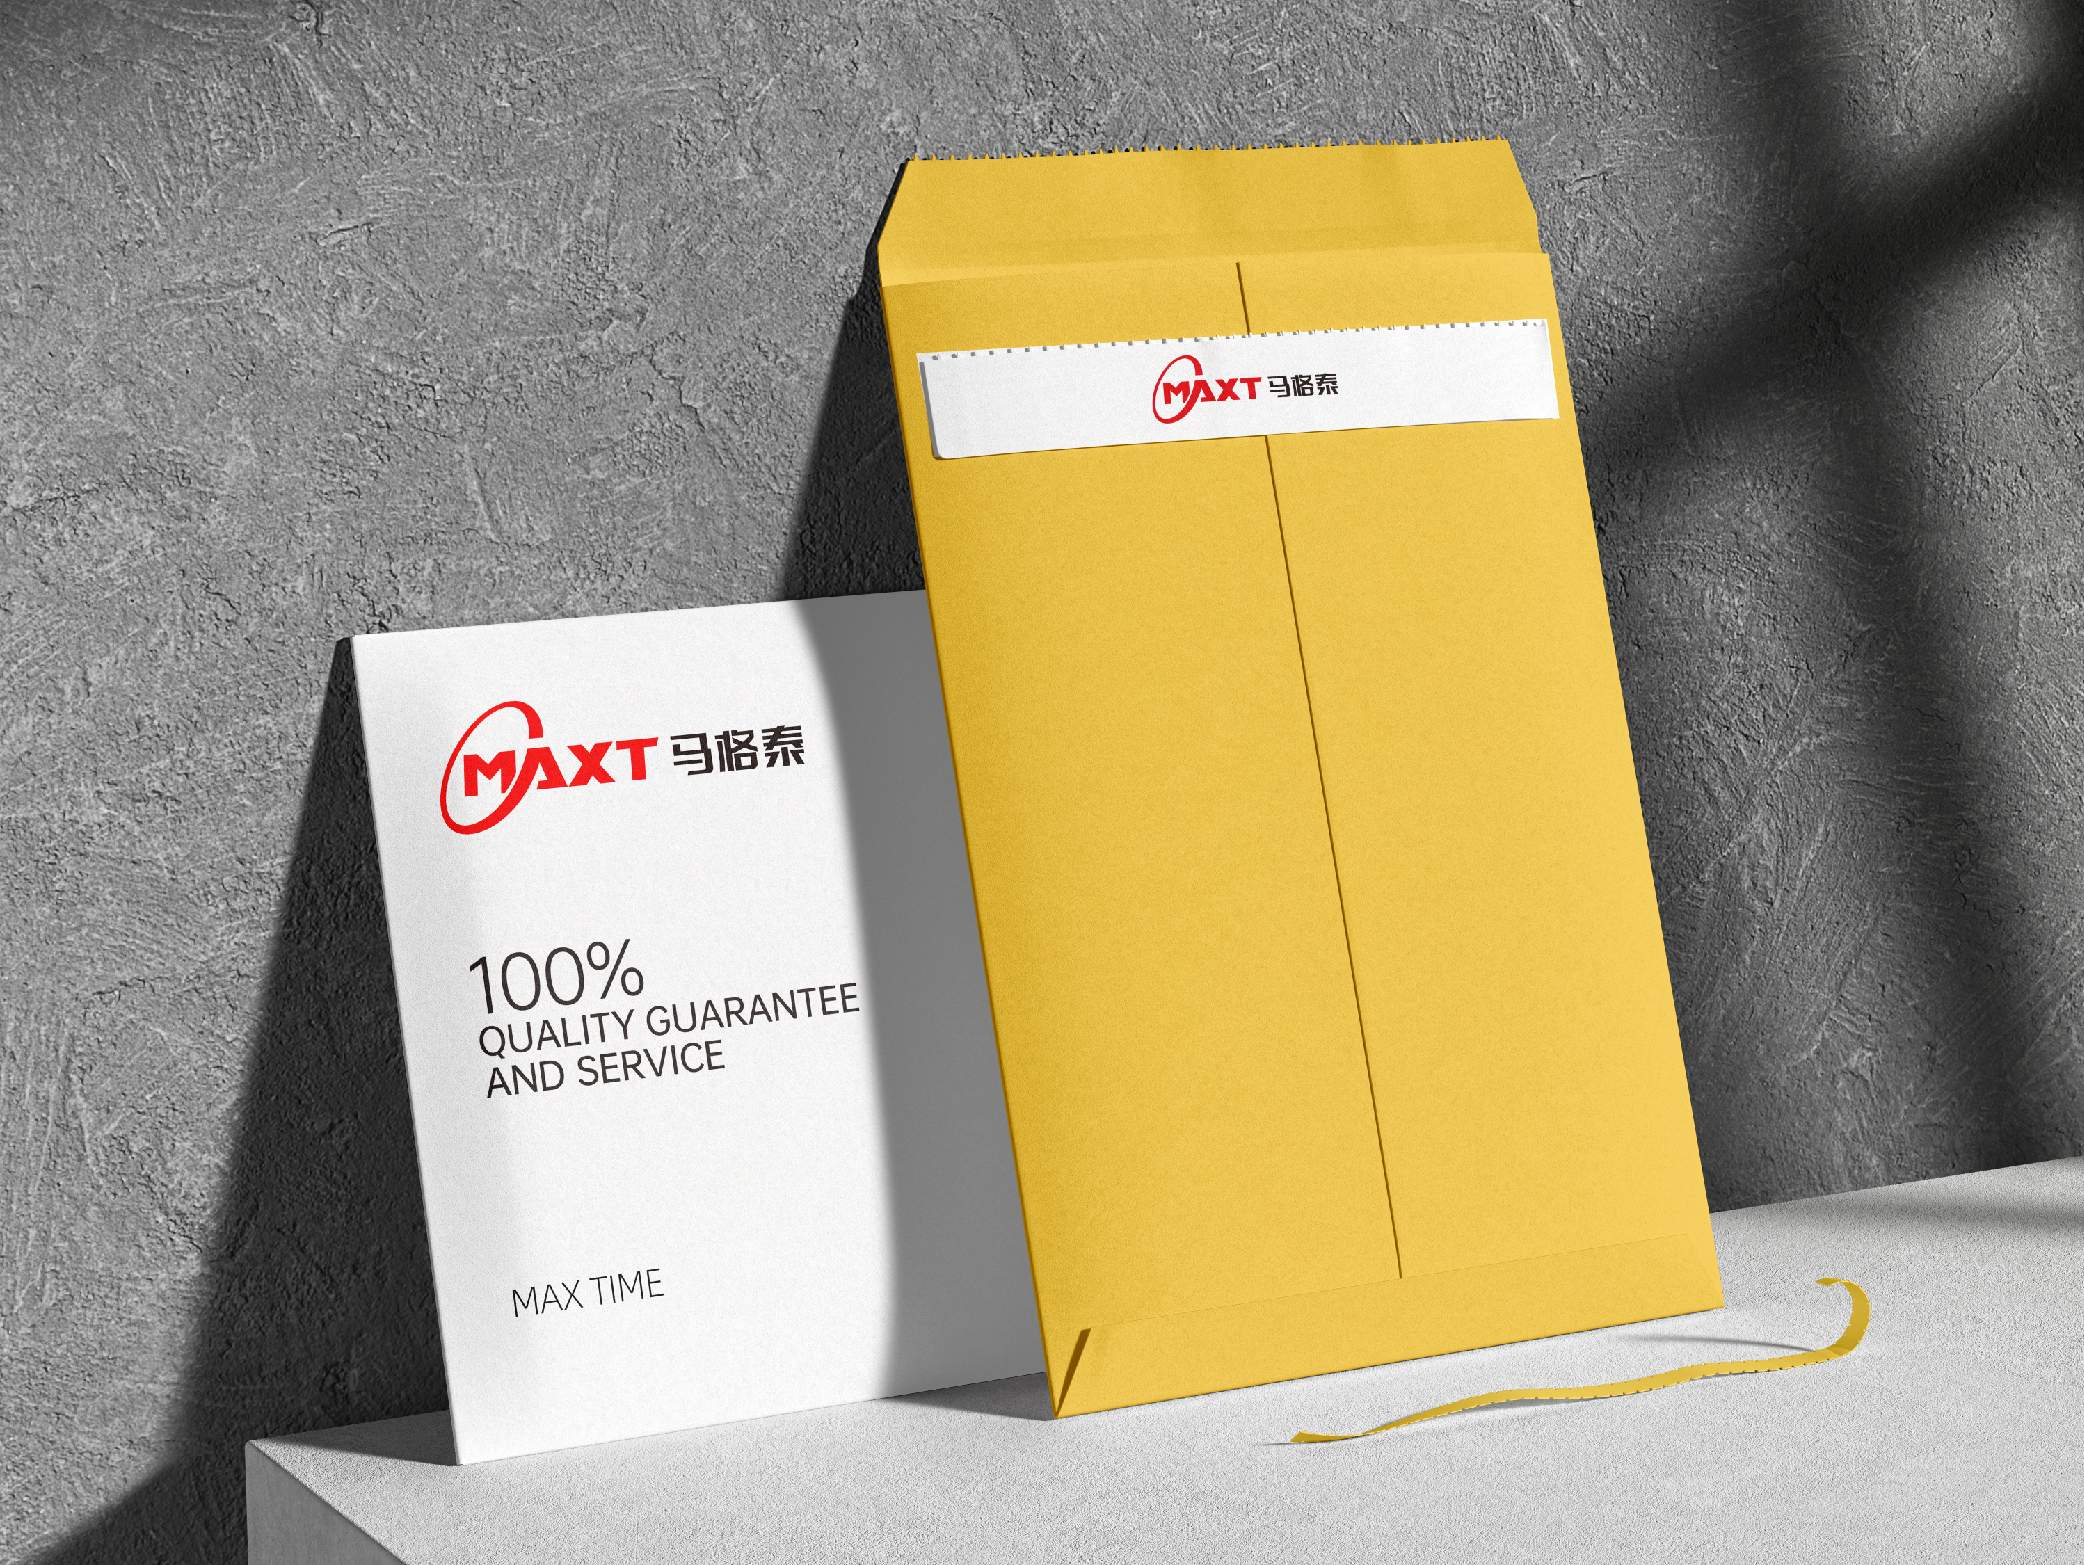 杭州橙思品牌设计案例-轴承品牌马格泰-品牌VI设计9.jpg